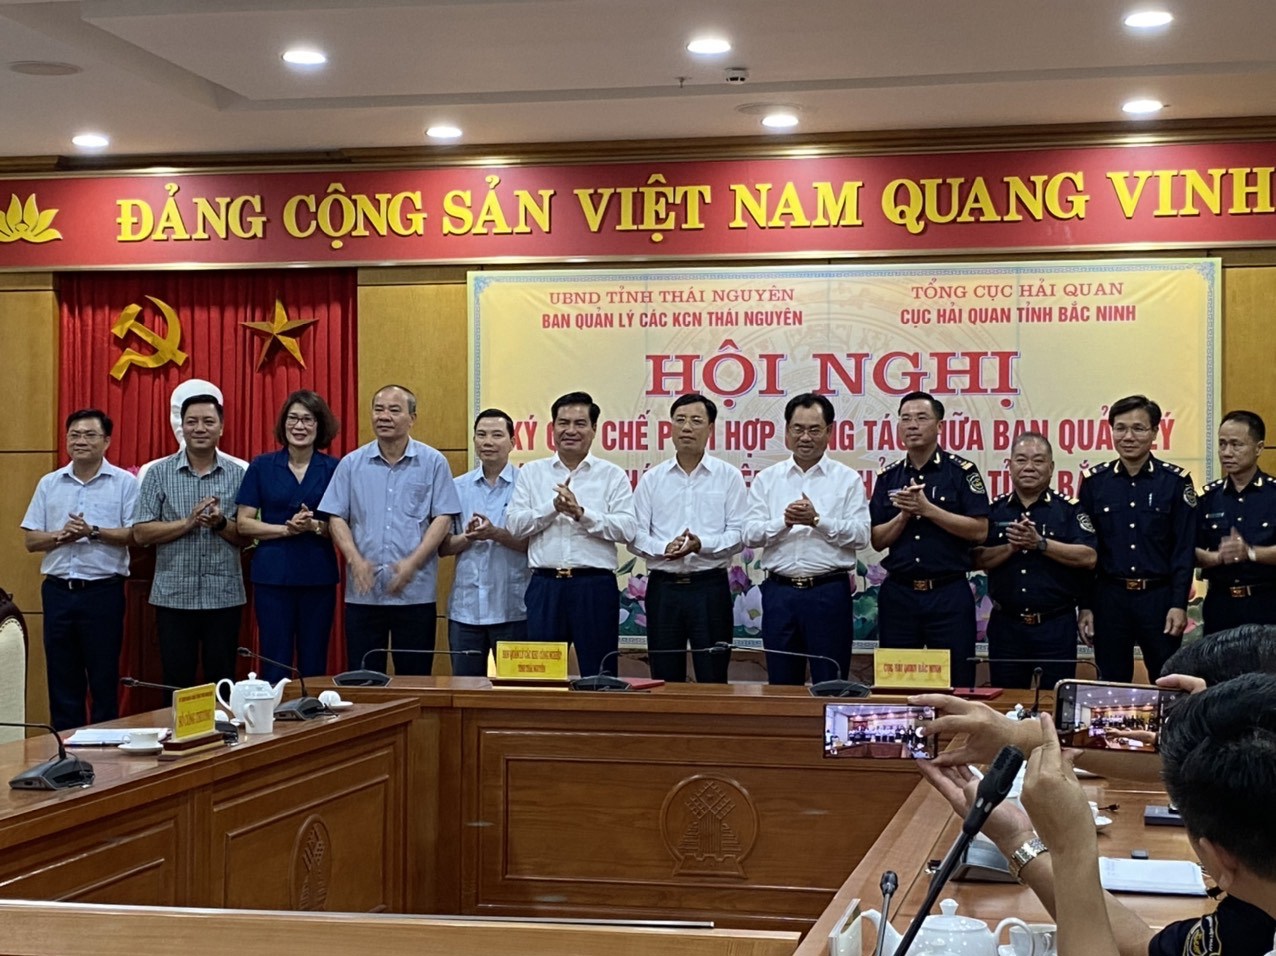 Các đại biểu tại Lễ ký quy chế phối hợp công tác giữa Ban Quản lý các khu công nghiệp Thái Nguyên và Cục Hải quan tỉnh Bắc Ninh.